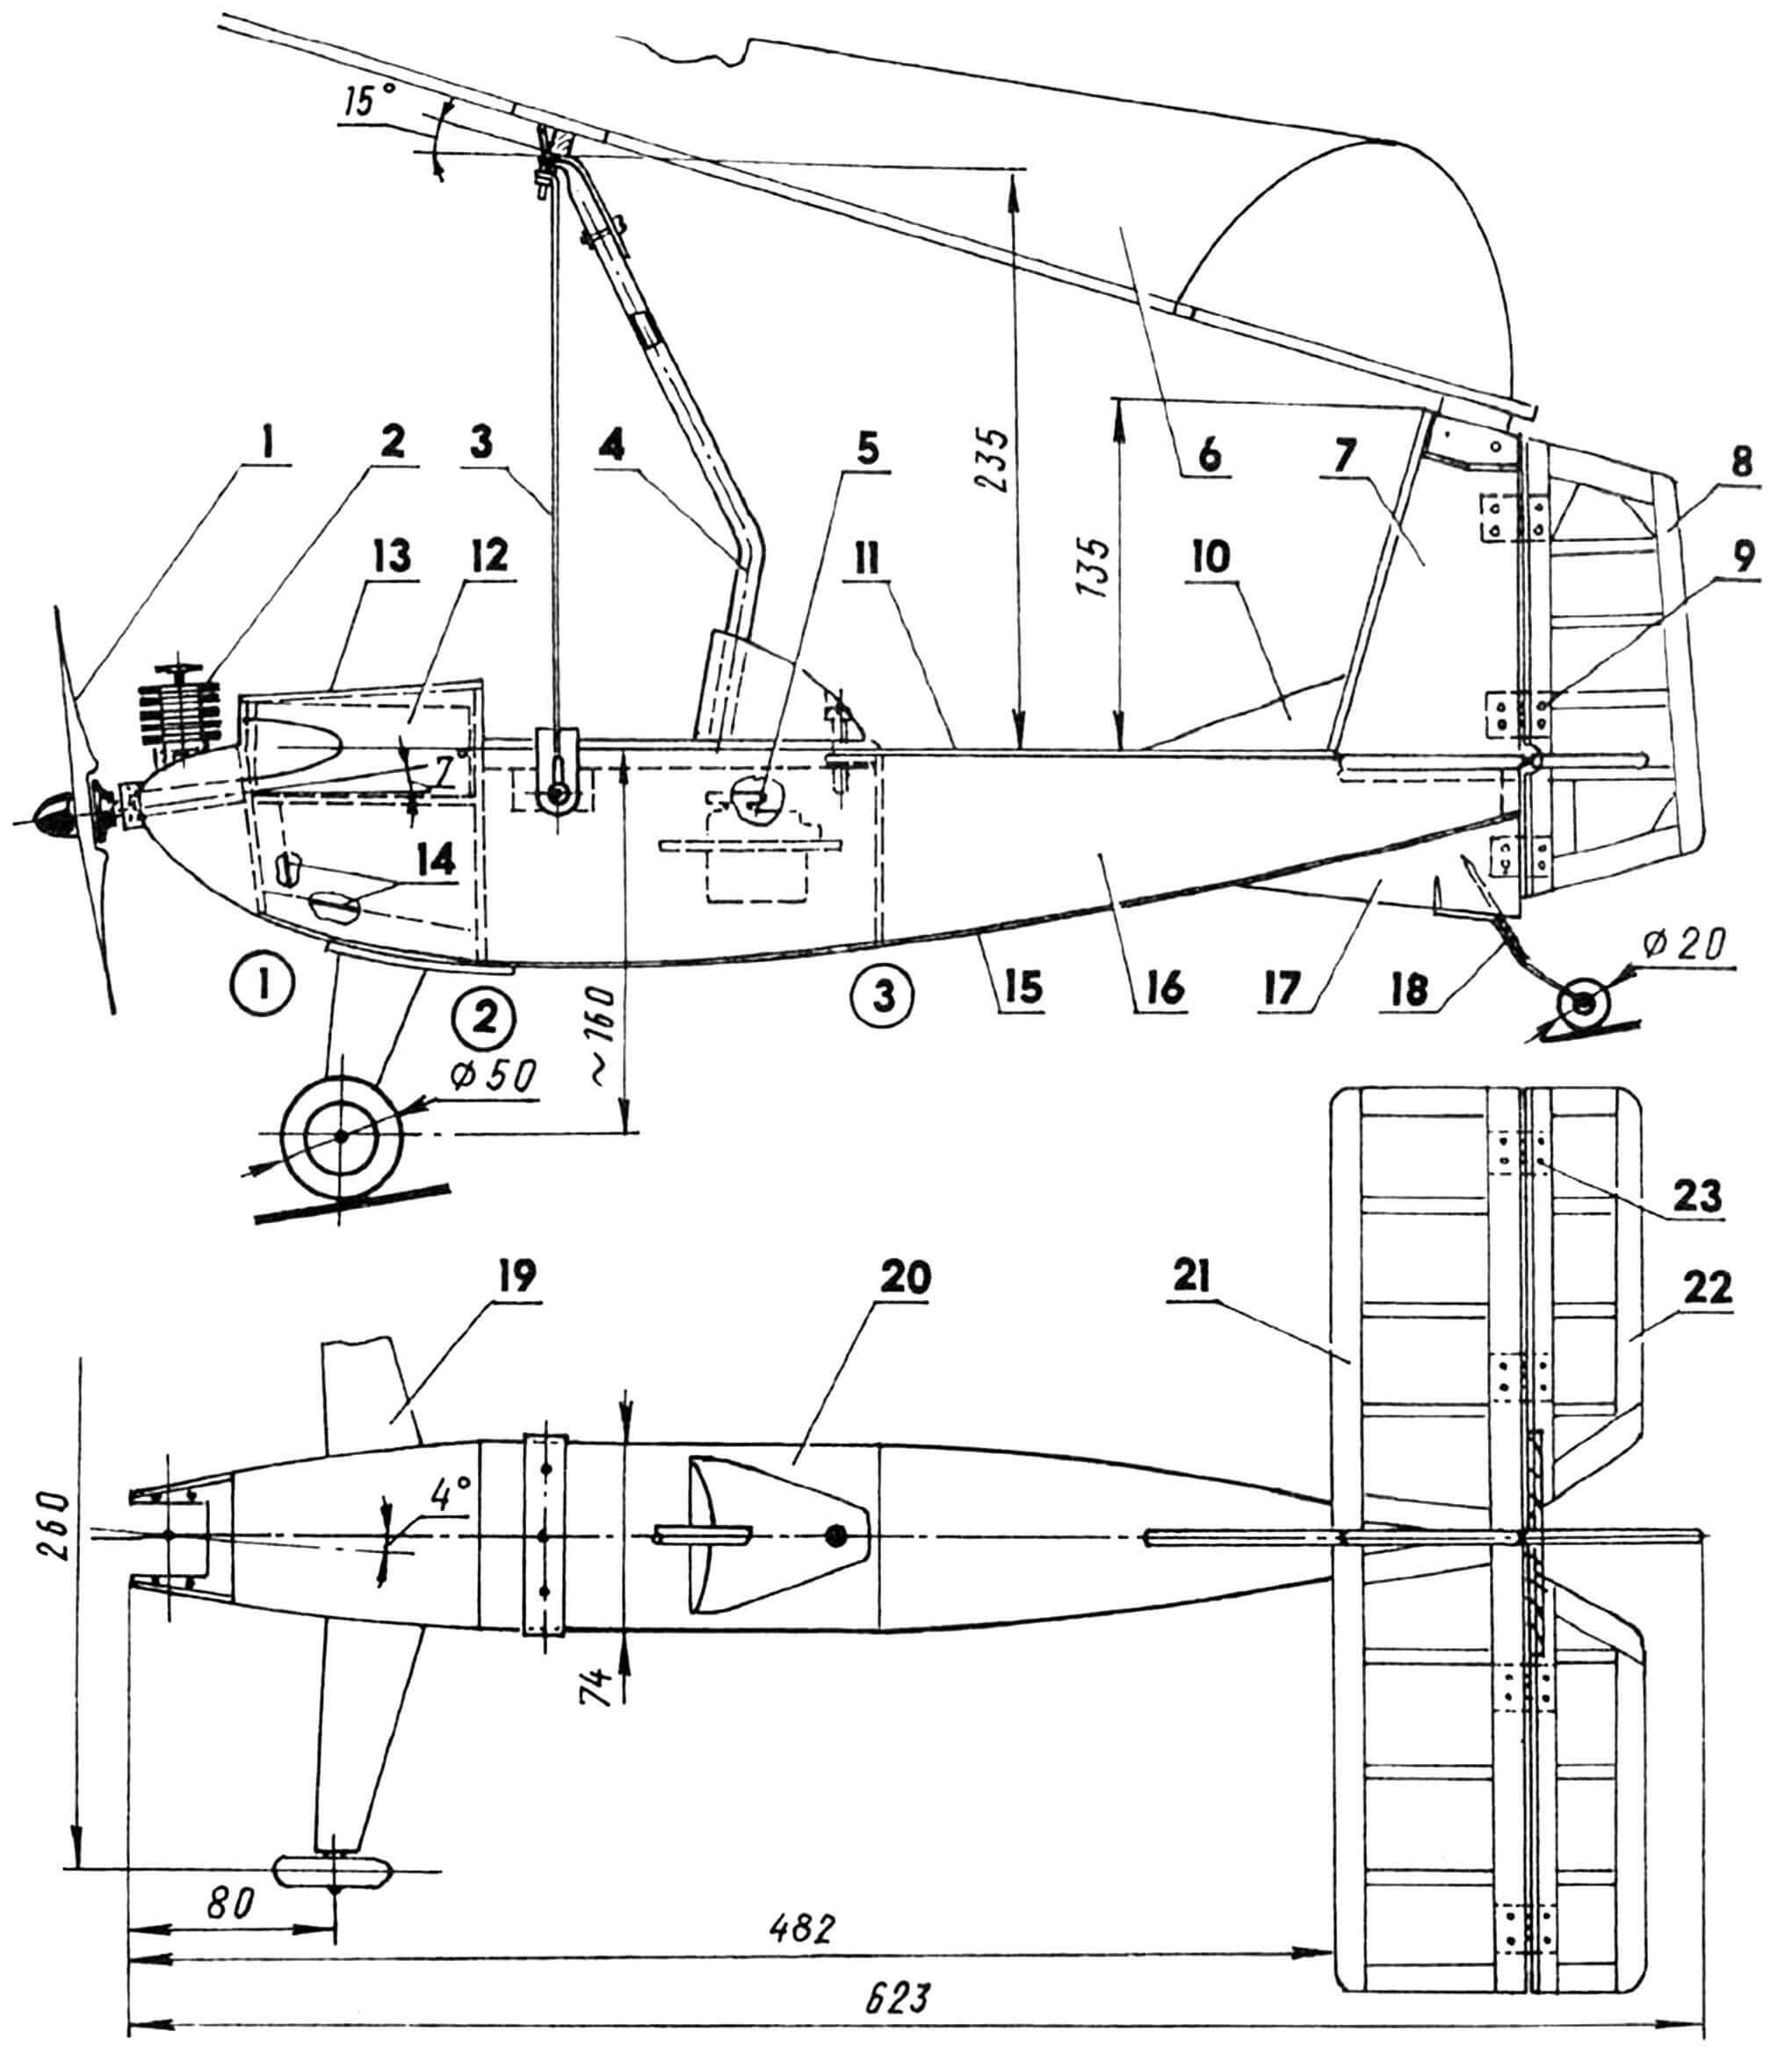 Радиоуправляемая модель дельталета (на плановой проекции крыло и двигатель условно не показаны): 1 — винт воздушный; 2 — двигатель рабочим объемом 1,5 — 2,5 см3; 3 — растяжка (проволока ø0,3); 4 — пилон (дюралюминиевая труба 8x1); 5 — блок рулевых машинок; 6 — крыло; 7 — киль; 8 — руль направления; 9 — петля руля направления; 10 — форкиль; 11 — панель фюзеляжа верхняя; 12 — бак топливный; 13 — обтекатель; 14 — каркас передней части фюзеляжа; 15 — панель фюзеляжа нижняя; 16 — панель фюзеляжа боковая; 17 — кронштейн; 18 — стойка шасси задняя; 19 — стойка шасси передняя; 20 — узел фюзеляжа центральный; 21 — оперение горизонтальное; 22 — руль высоты; 23 — петля руля высоты.